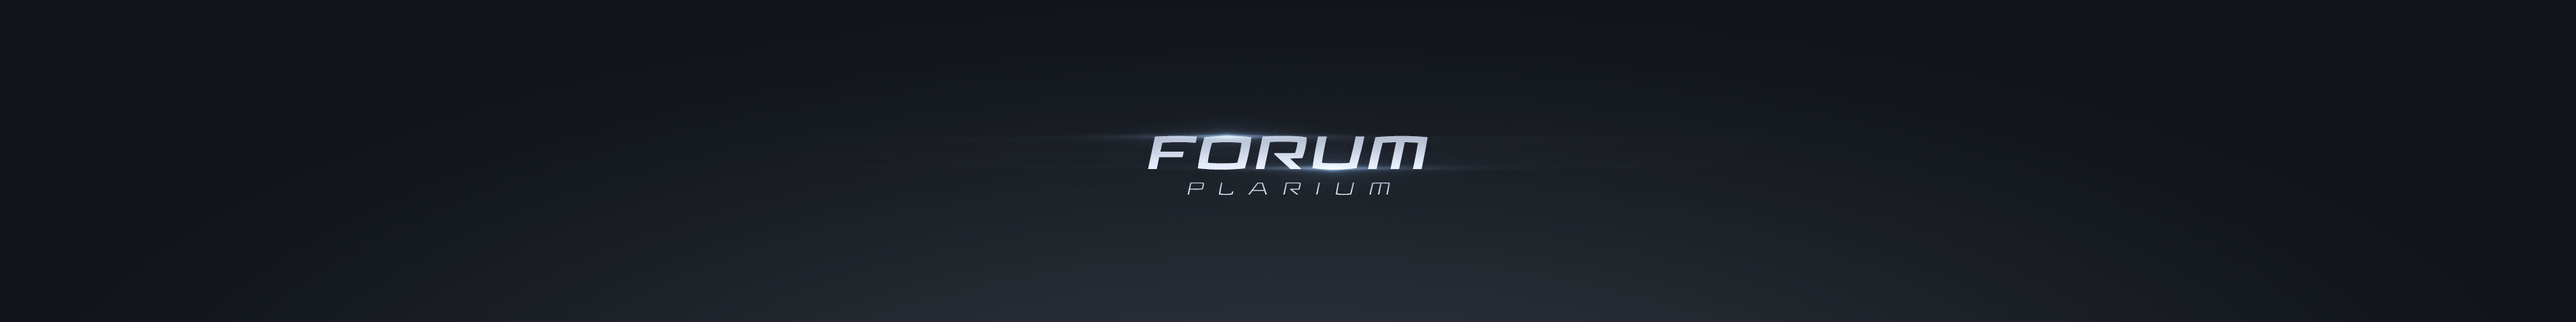 Plarium Forum